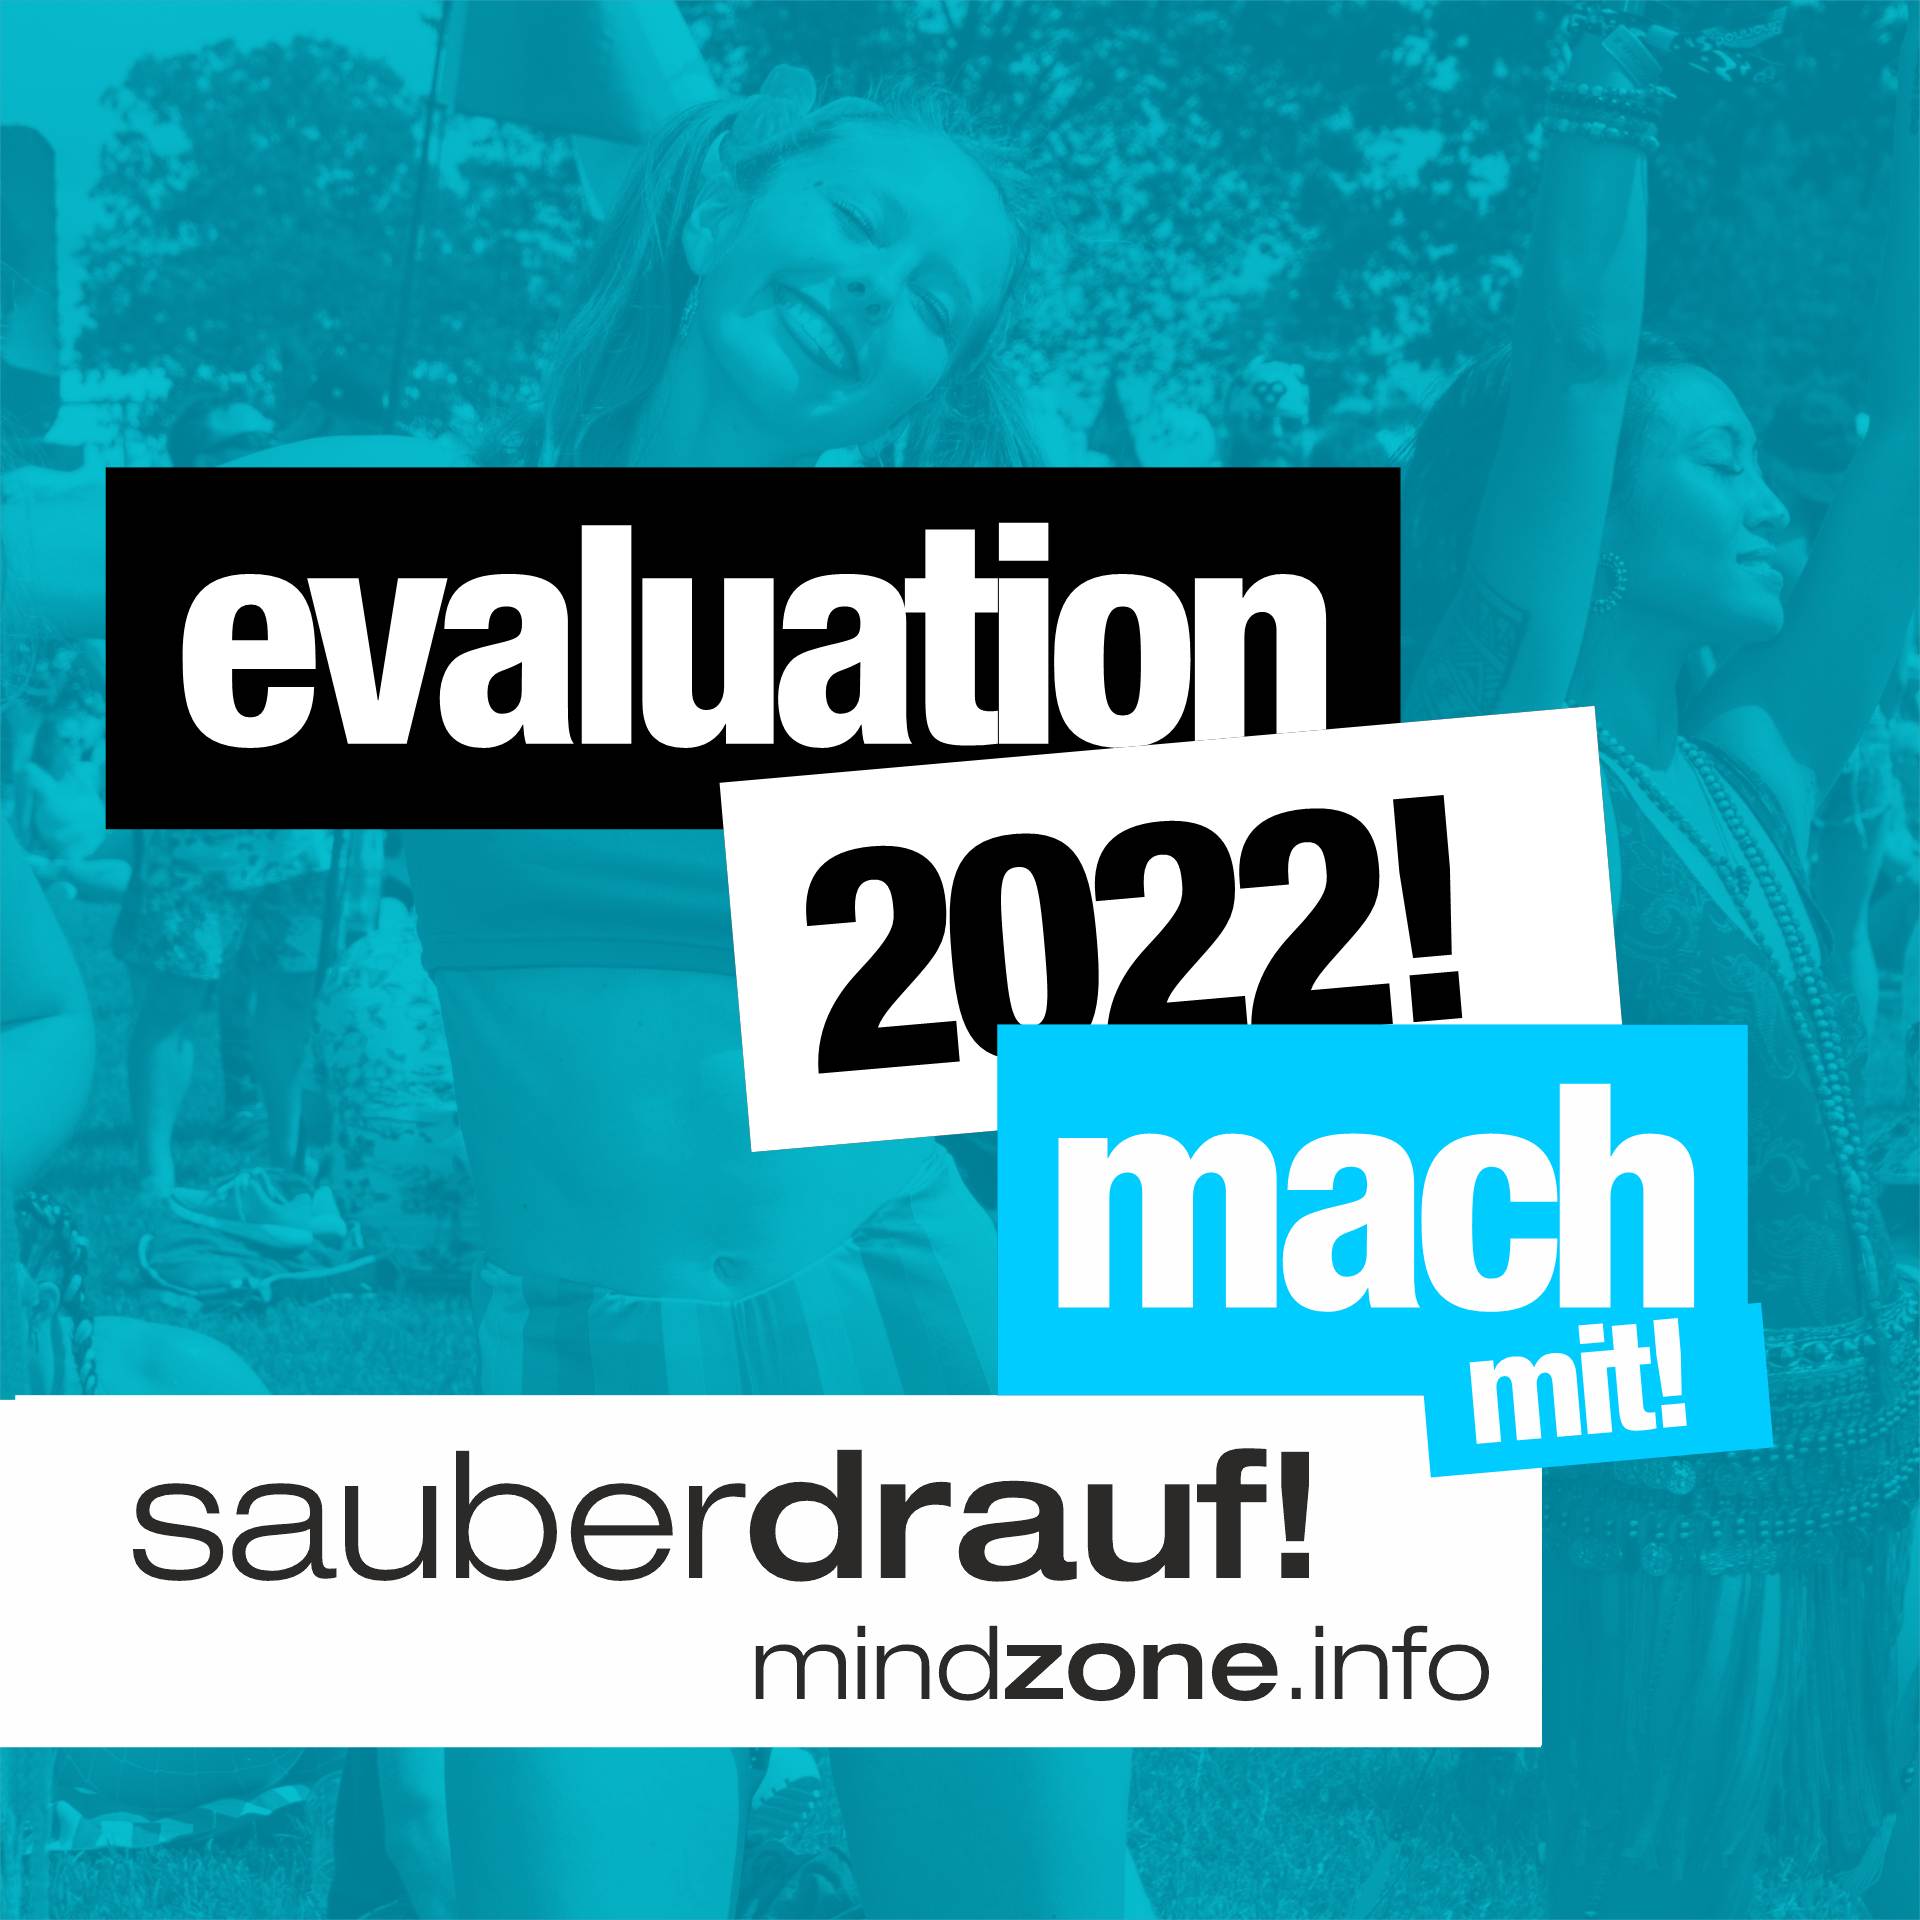 Der Fragebogen zu mindzone_sauberdrauf-EVALUATION-2022